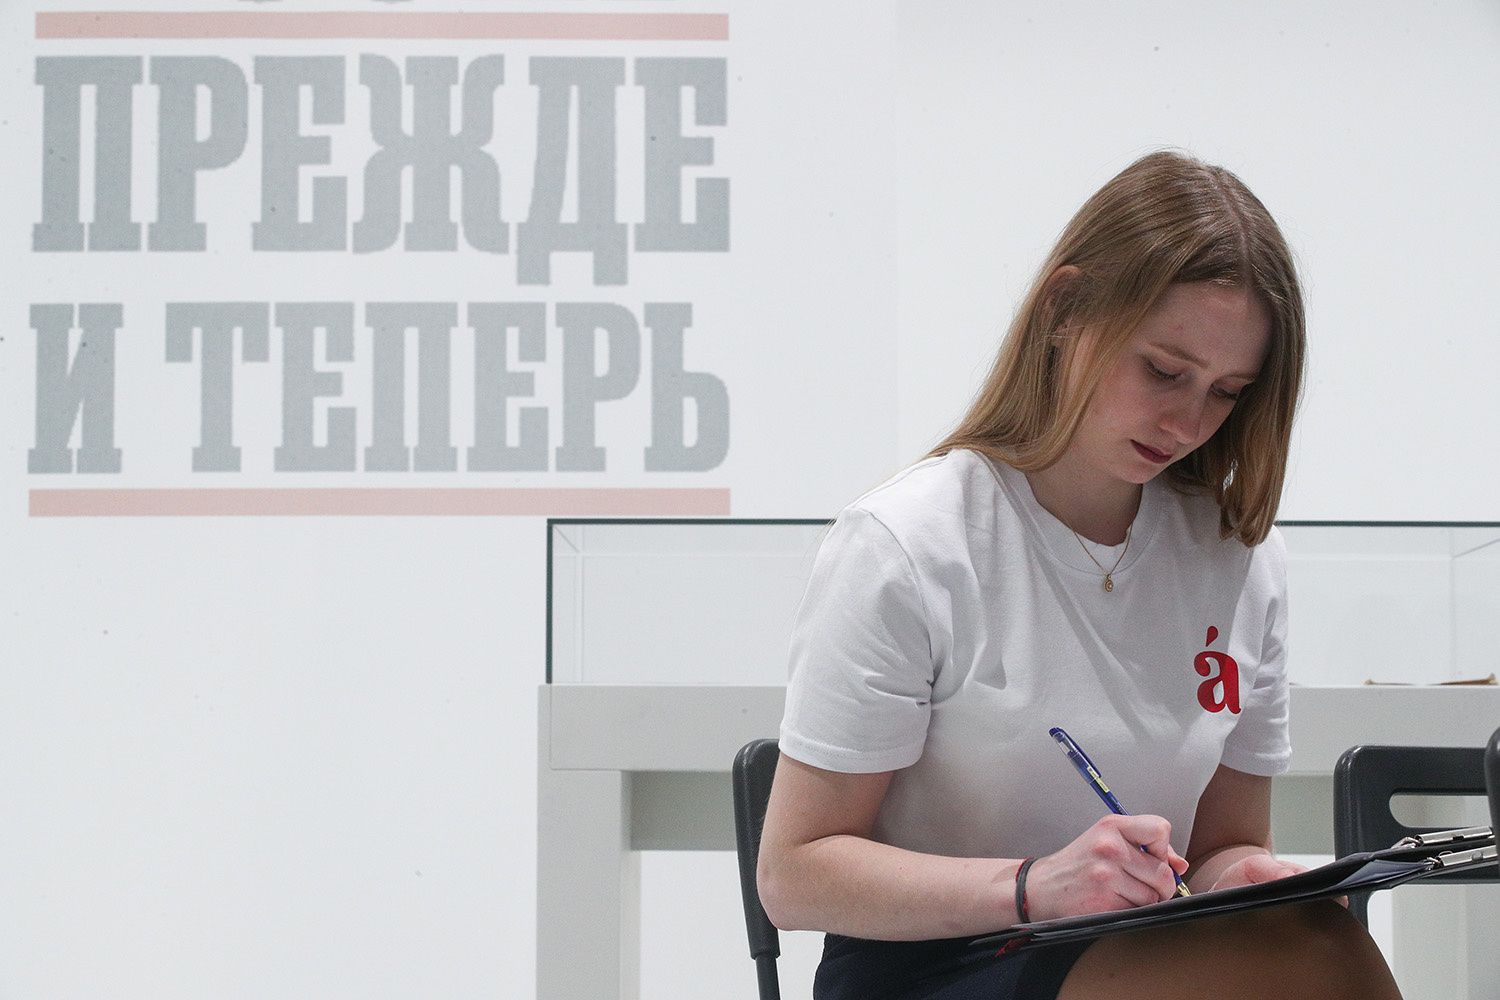 Была «ёлка» — будет «елка»: в России задумали реформу русского языка — вот что изменится